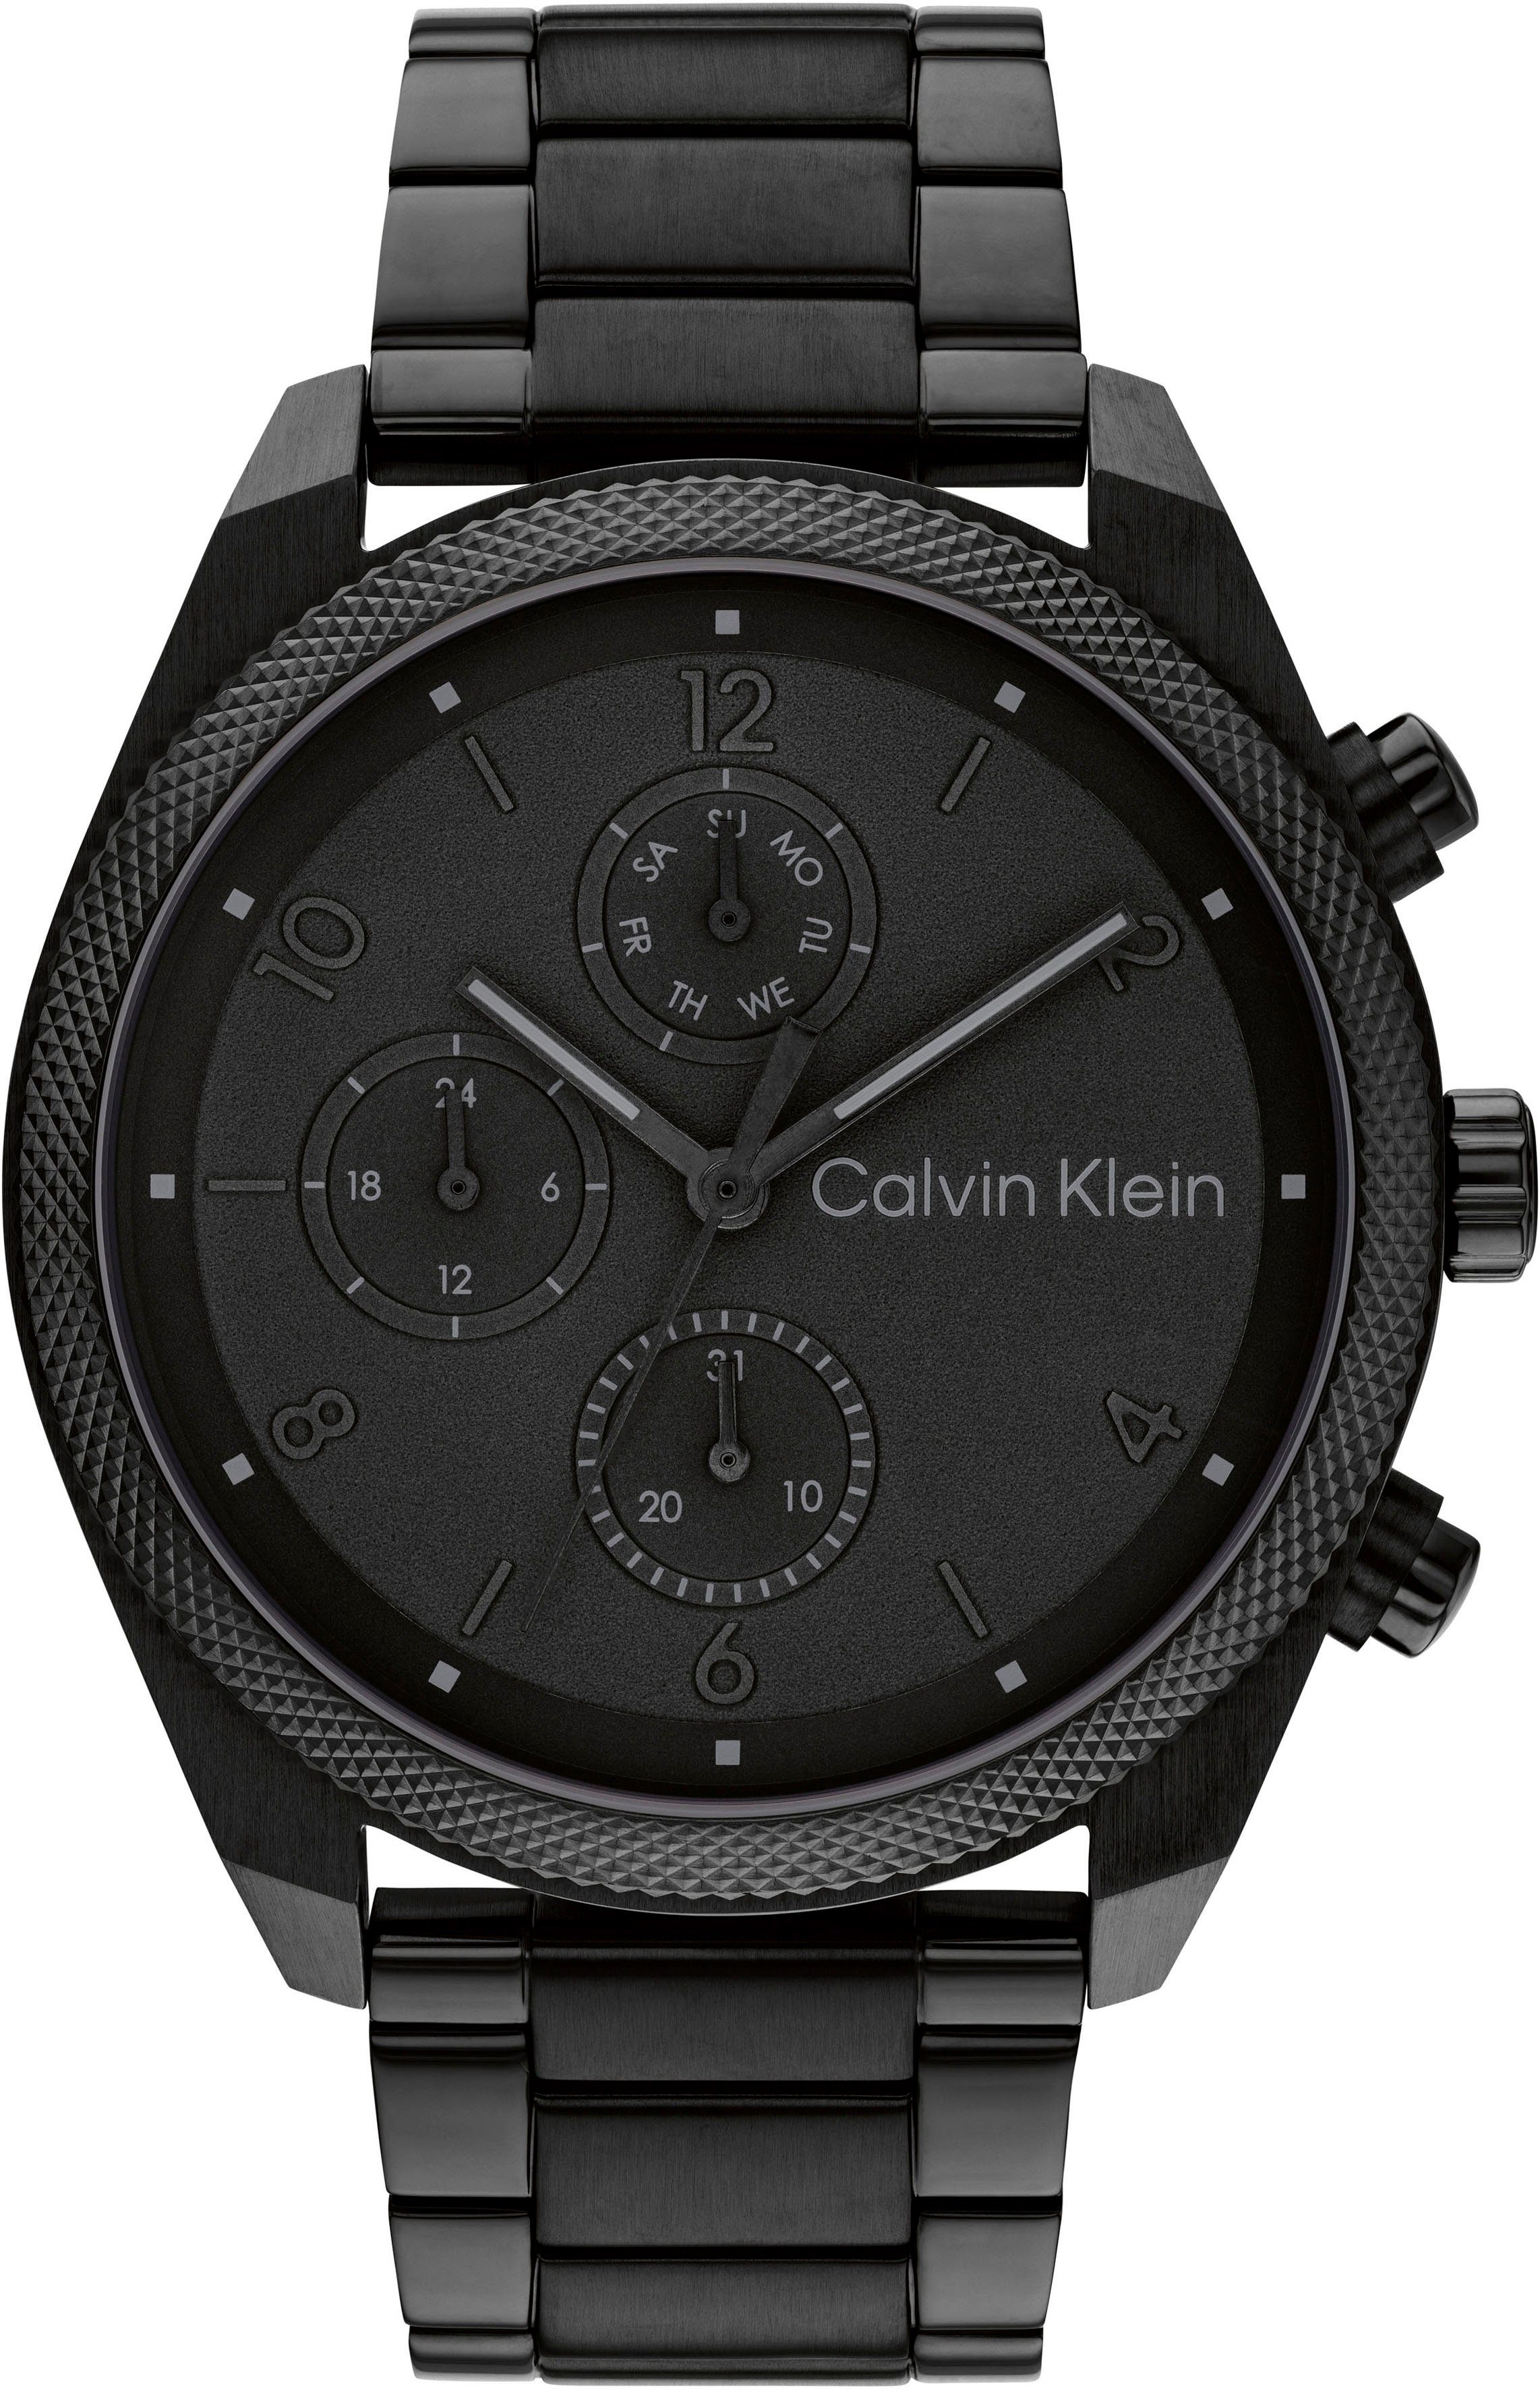 Calvin Klein Multifunktionsuhr ARCHITECTURAL, 25200359, Quarzuhr, Armbanduhr, Herrenuhr, Datum, IP-Beschichtung